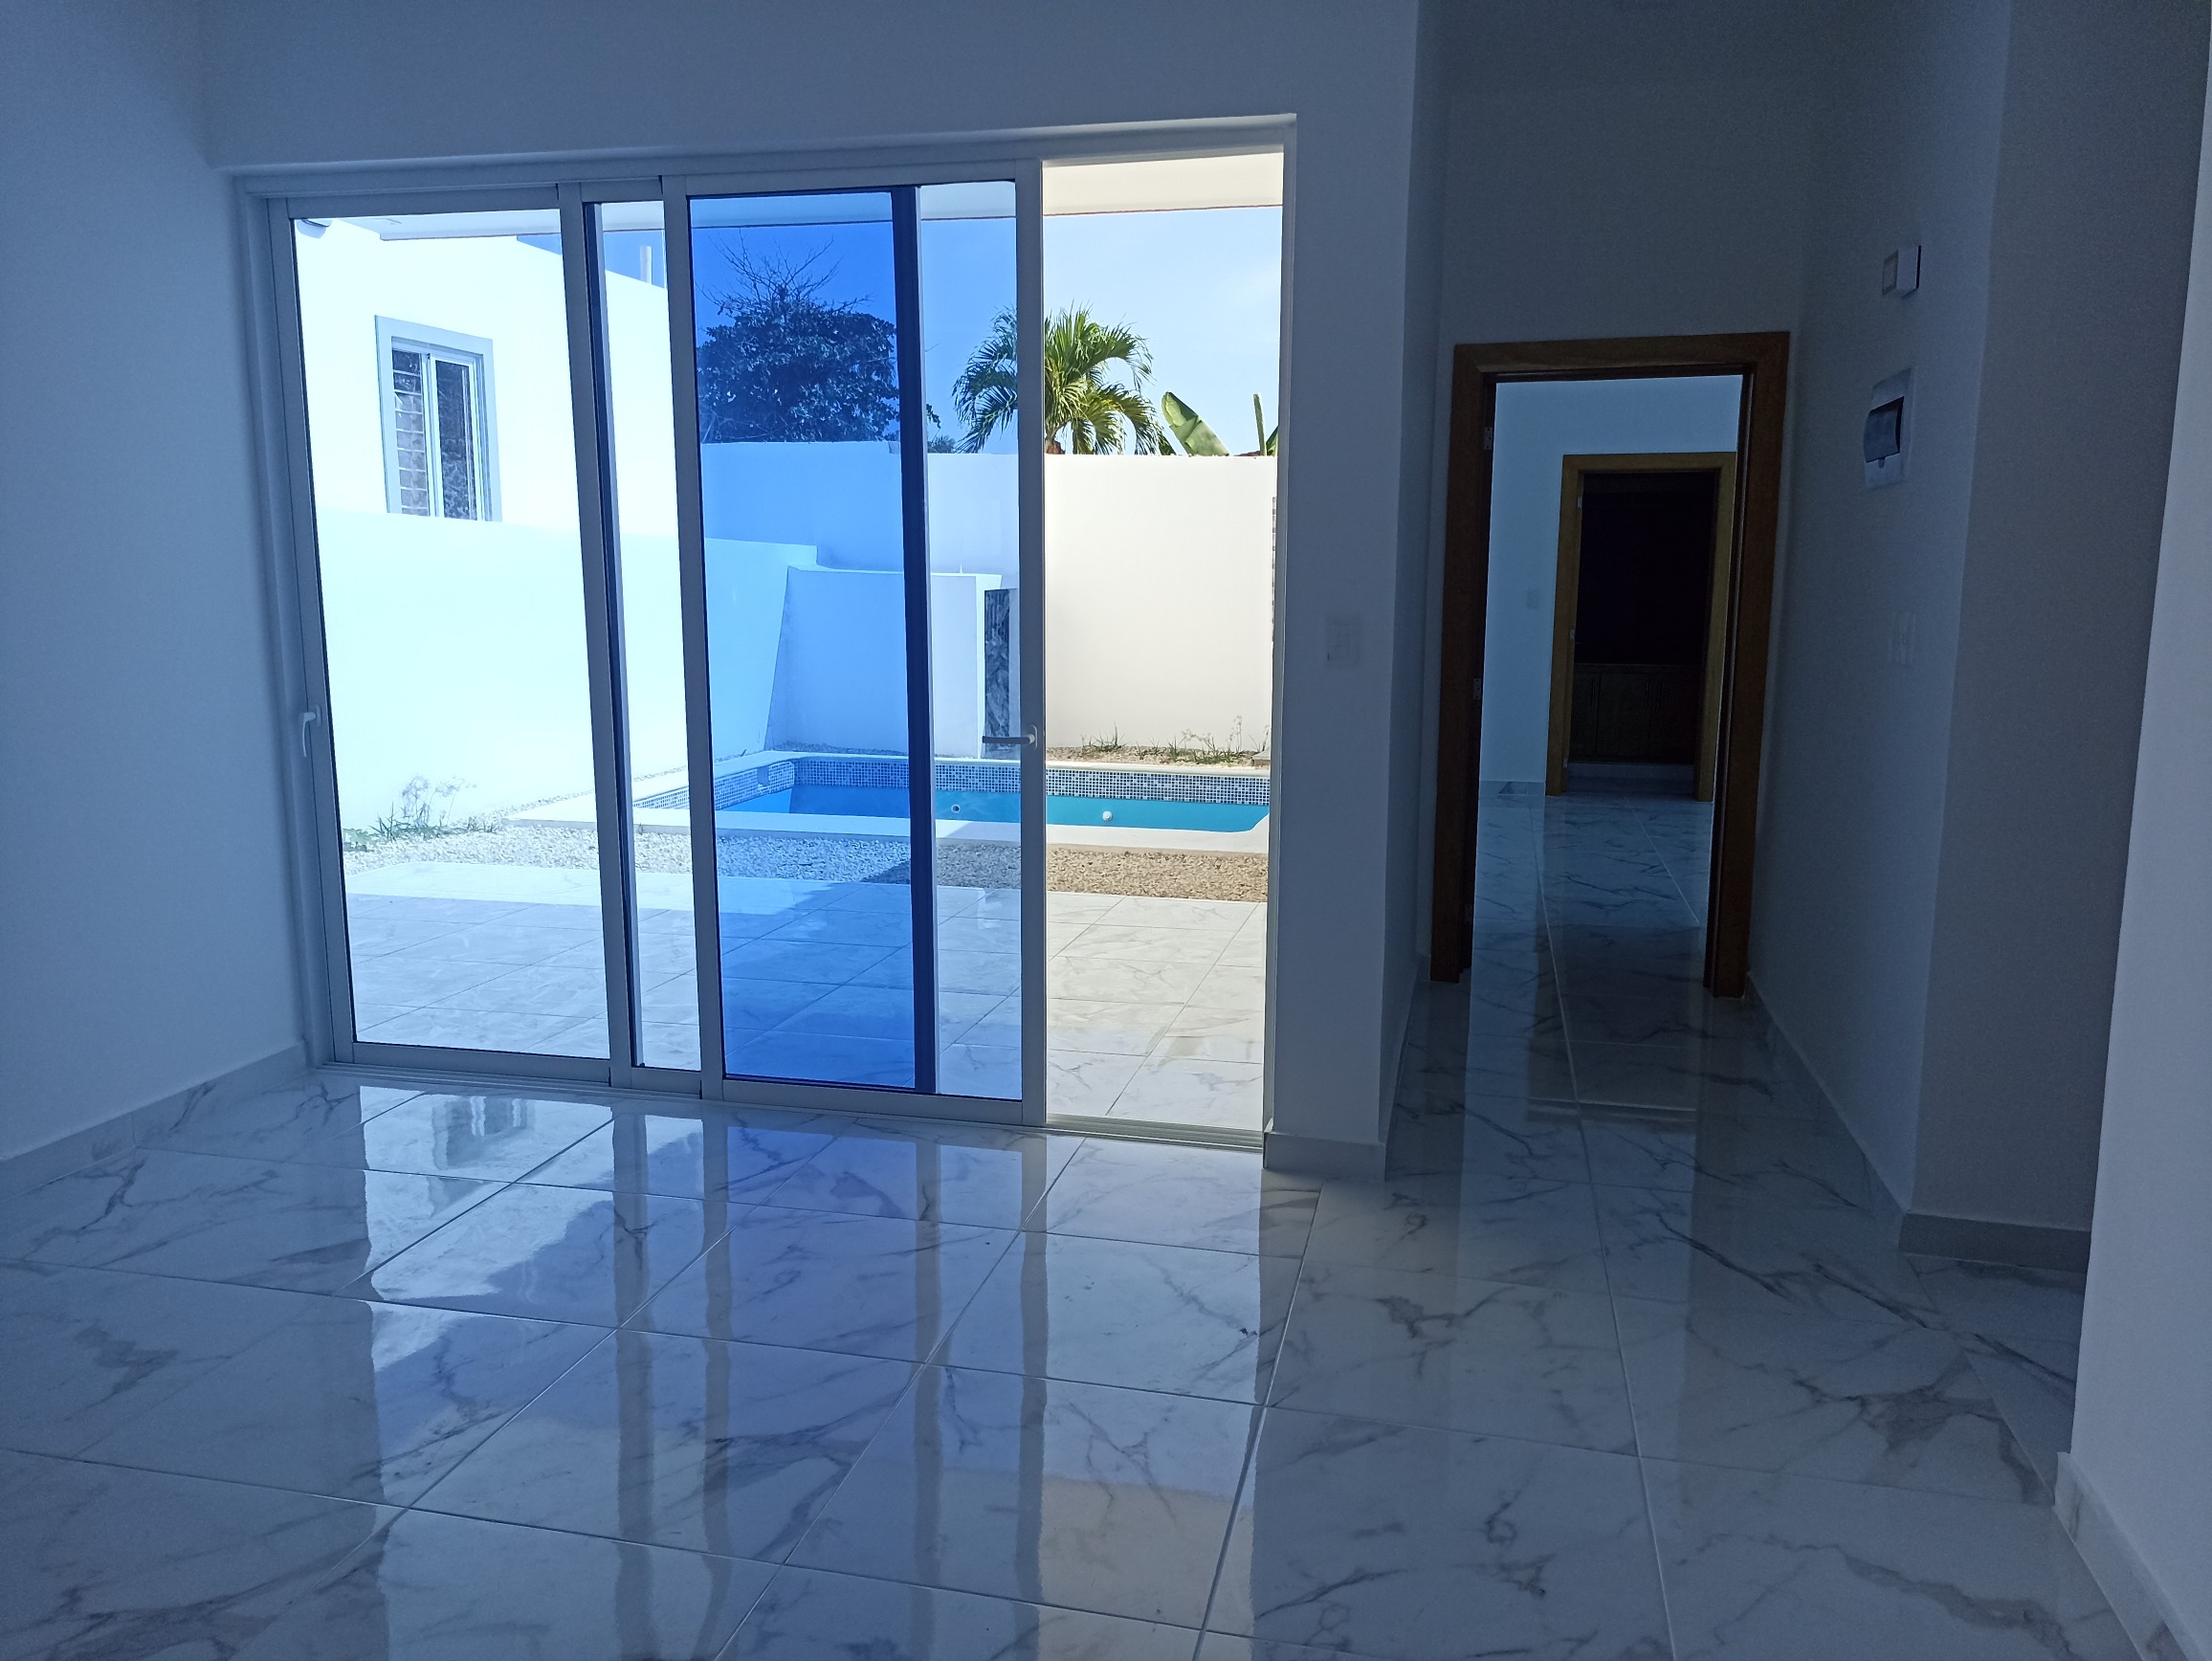 casas - Casa acogedora con piscina con excelente ubicación cerca de la playa 4